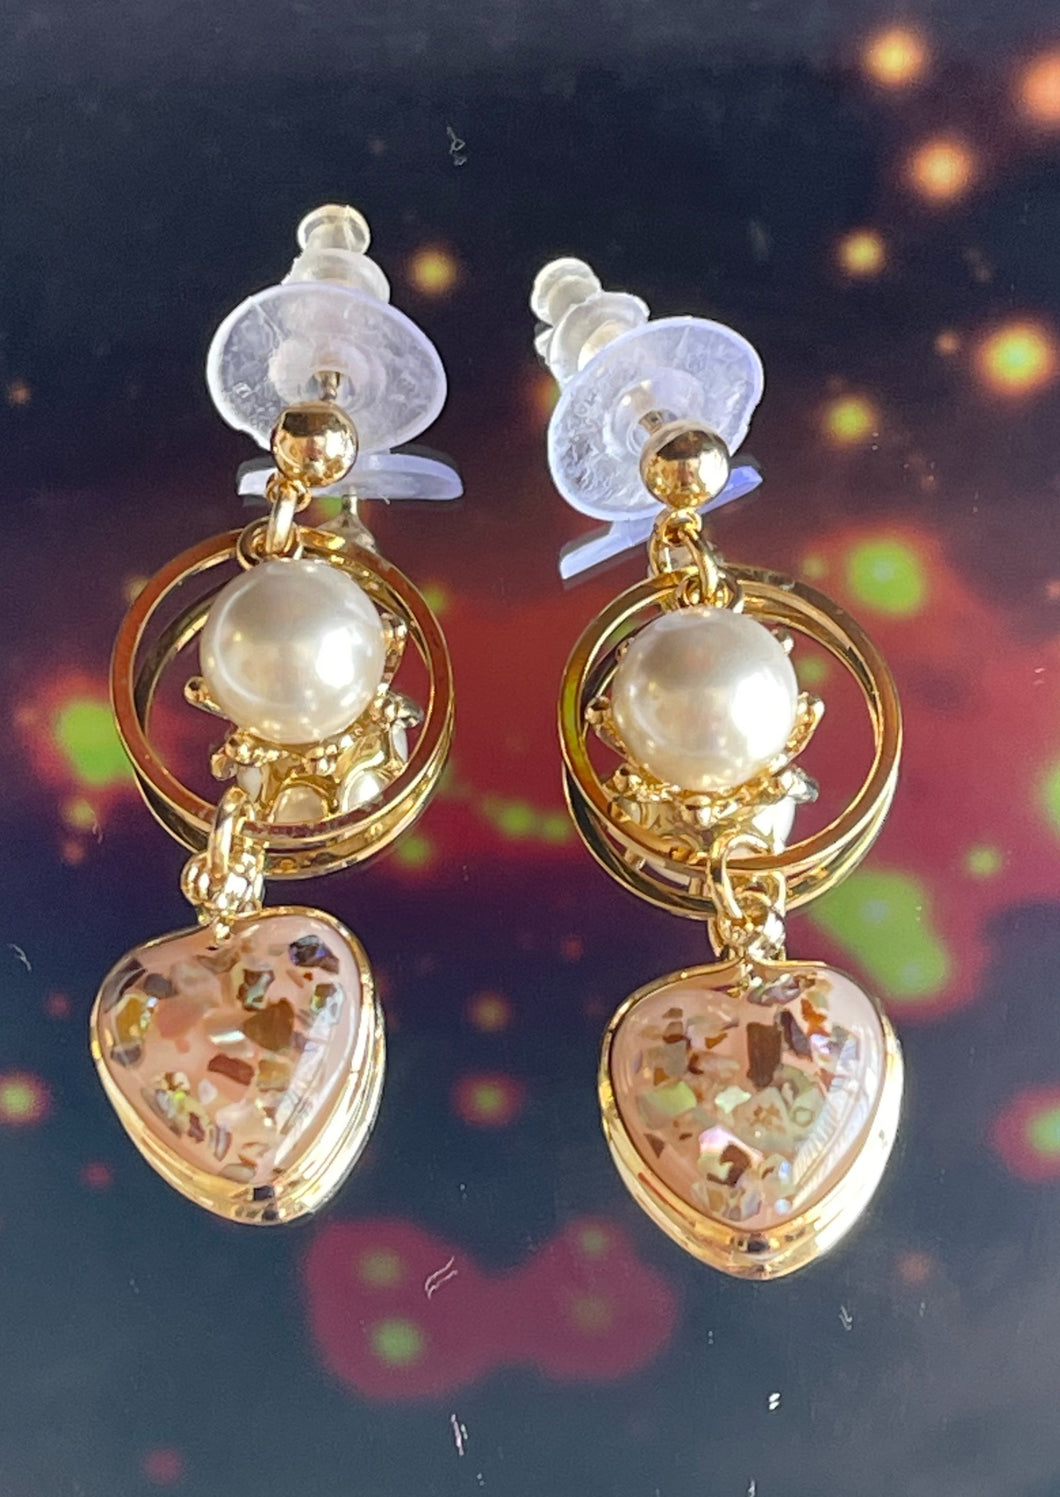 Women's earrings heart shape and pearl style